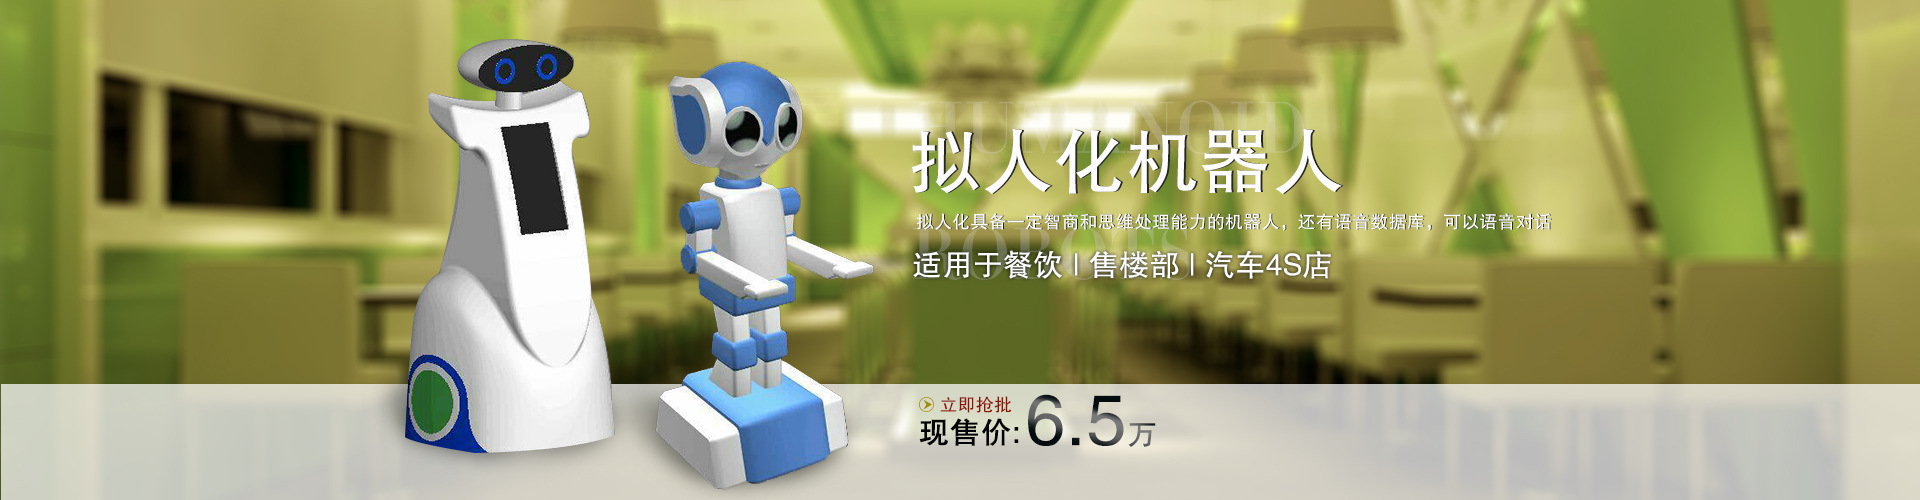 云南大理家用机器人可以代替保姆的机器人